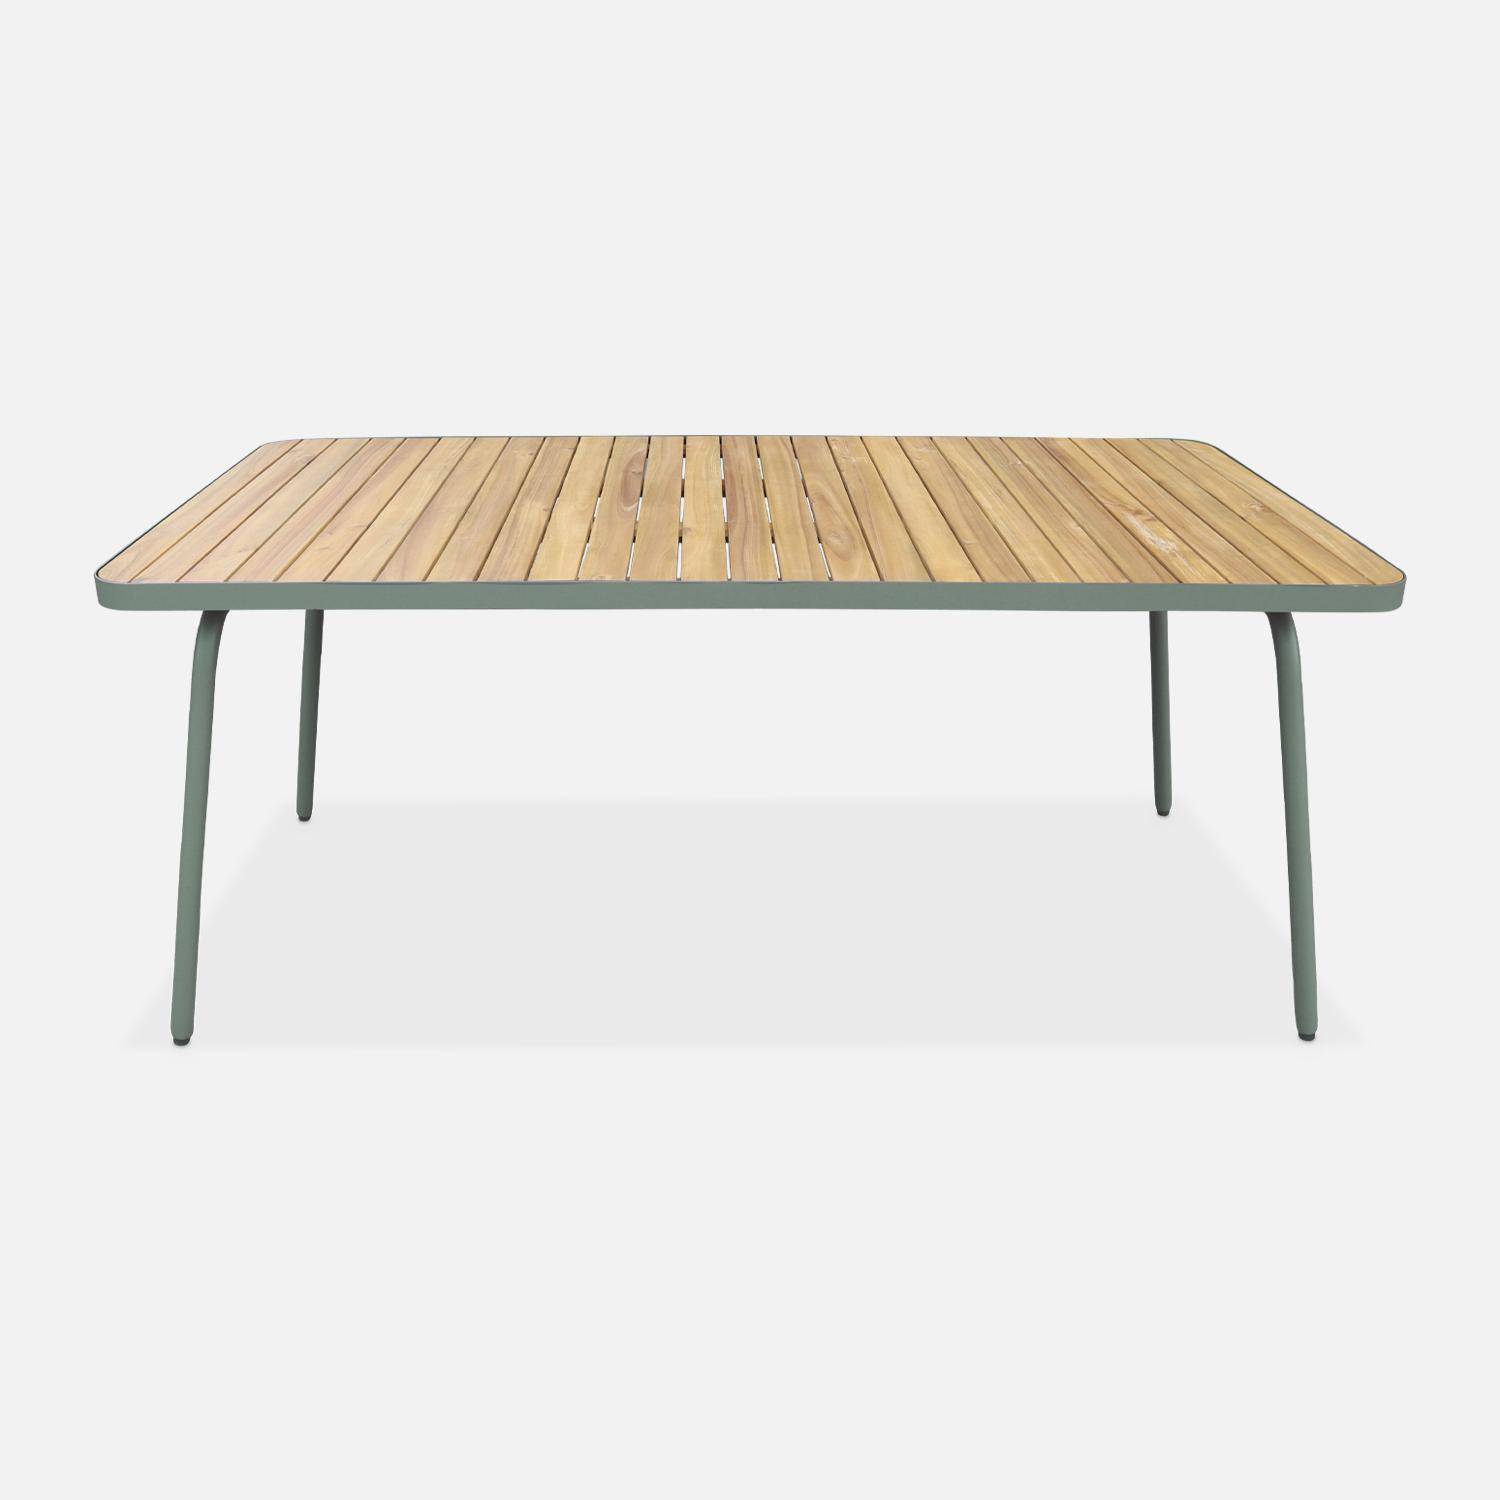 Gartentisch aus FSC-Akazienholz, salbeigrüner Stahl, klappbare Beine, 6 Plätze - Sanur,sweeek,Photo2